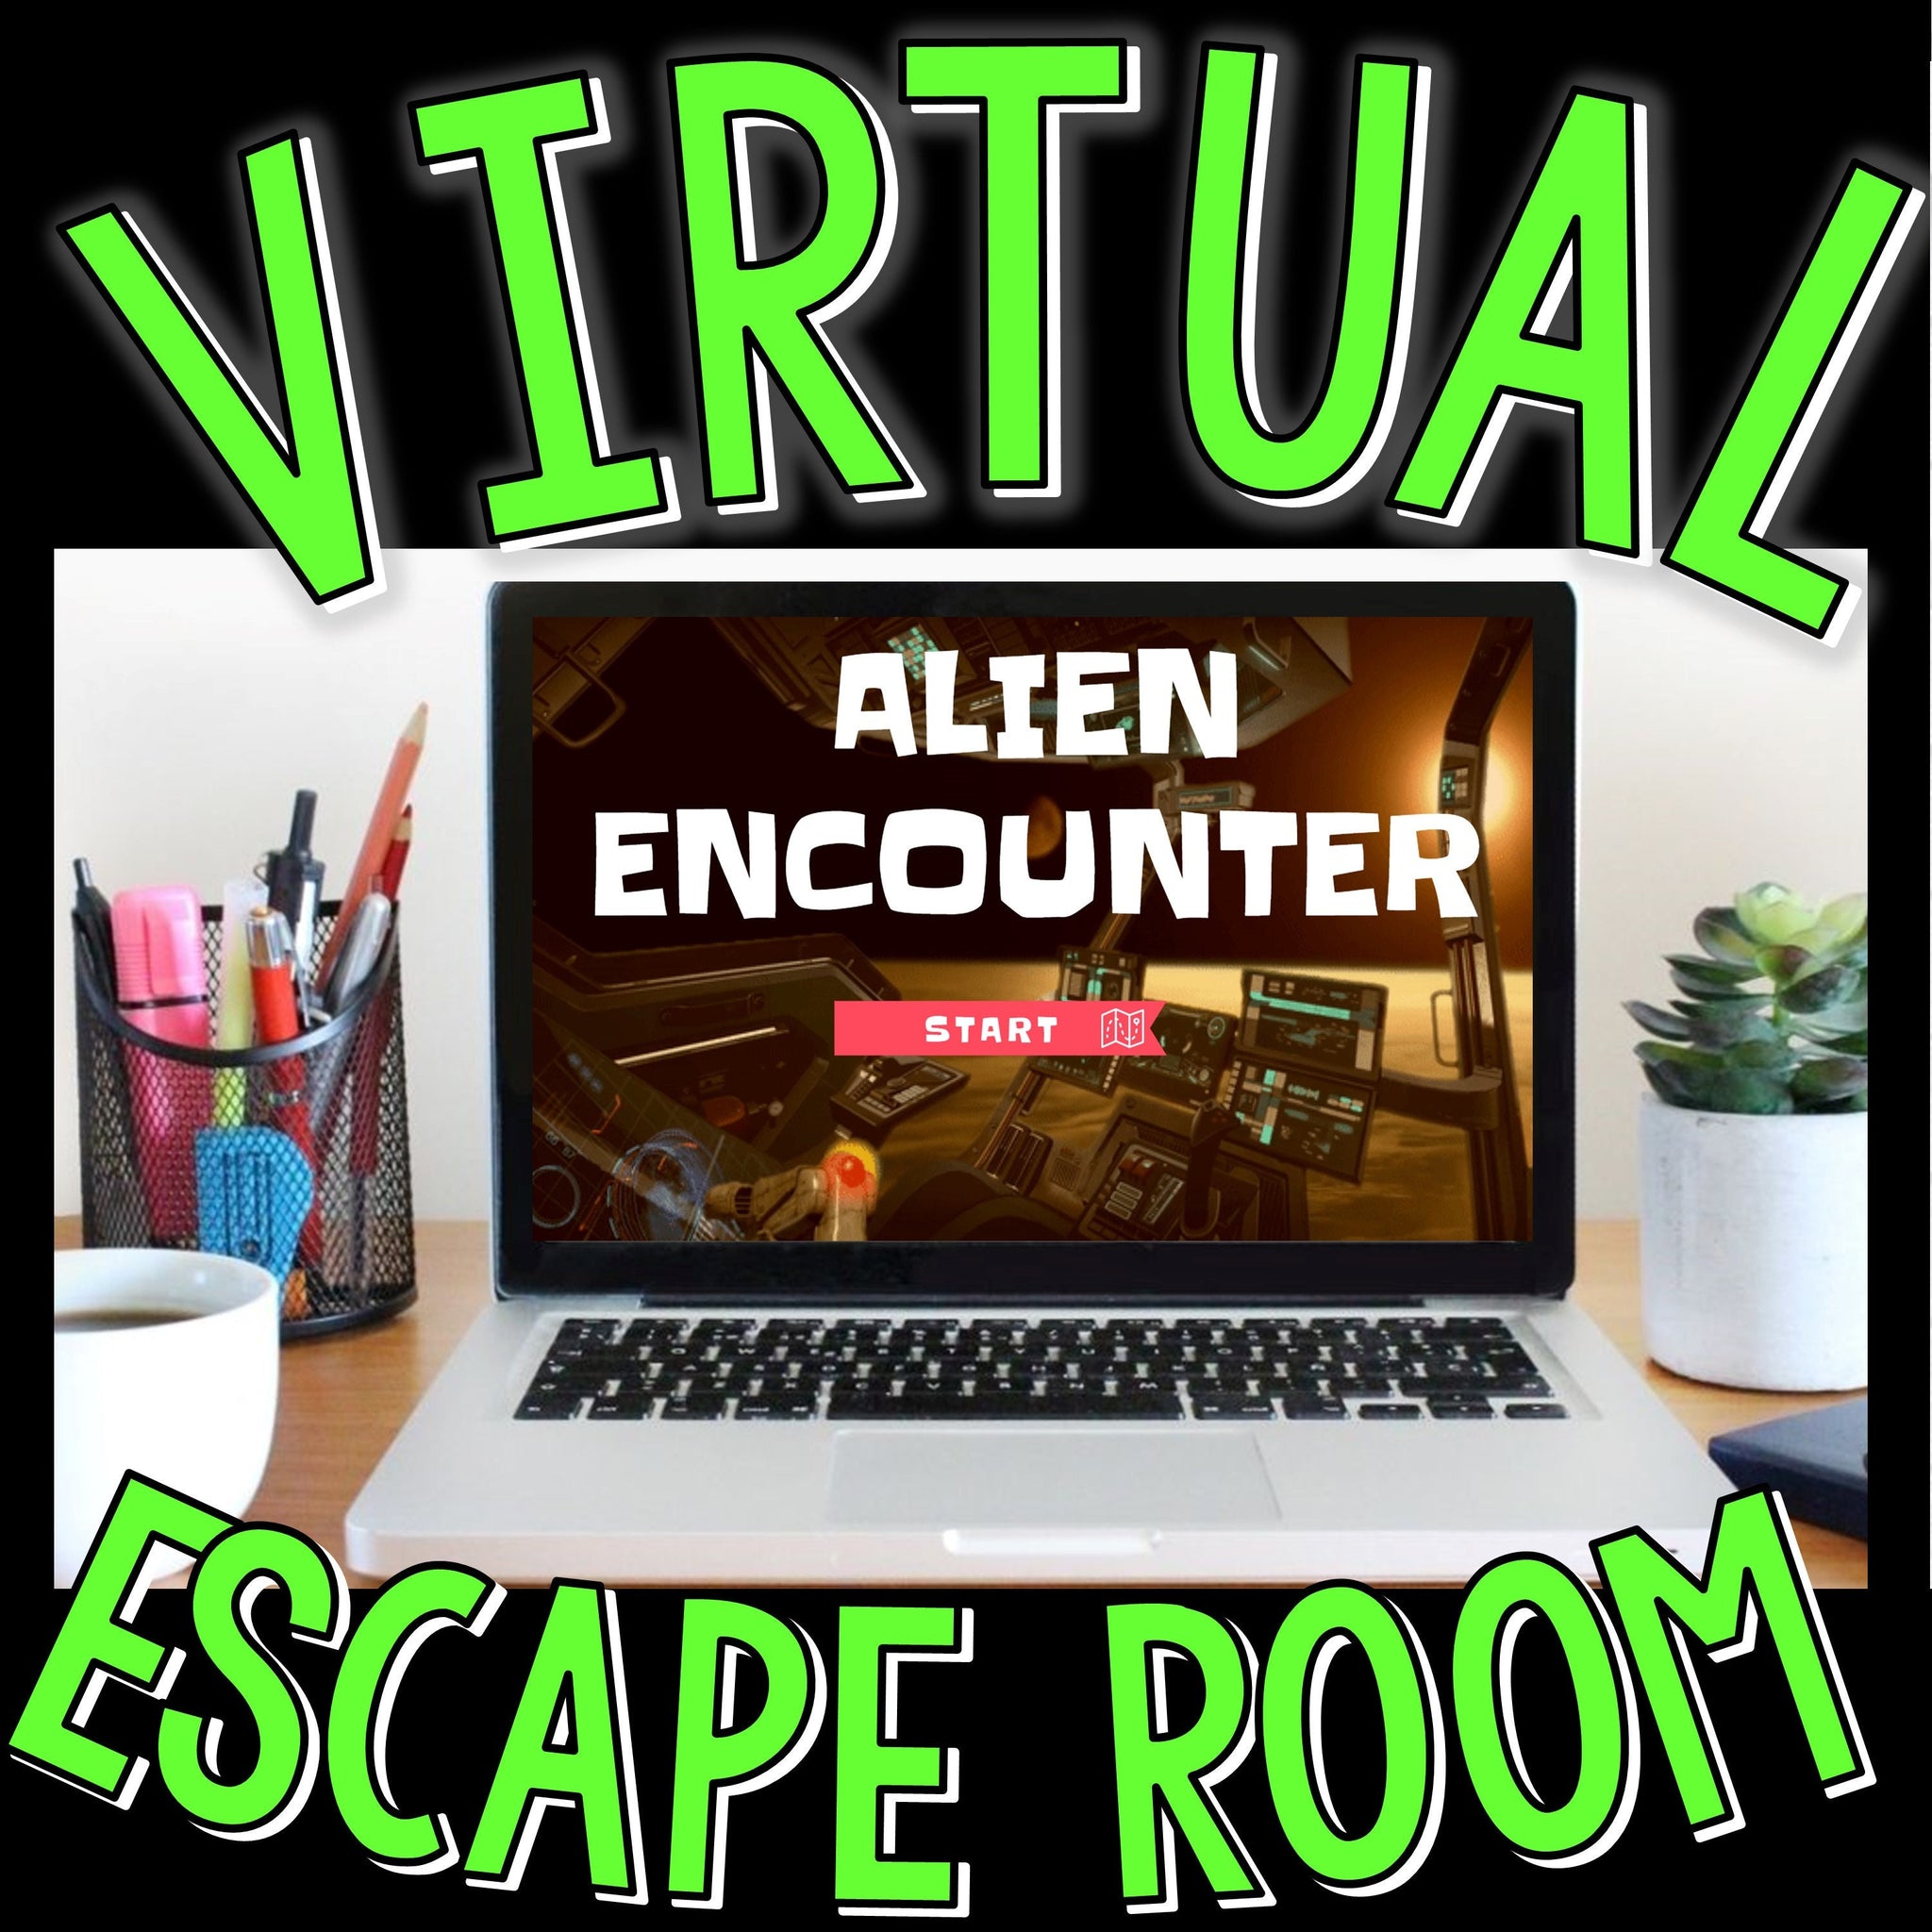 Escape Room Puzzles Online